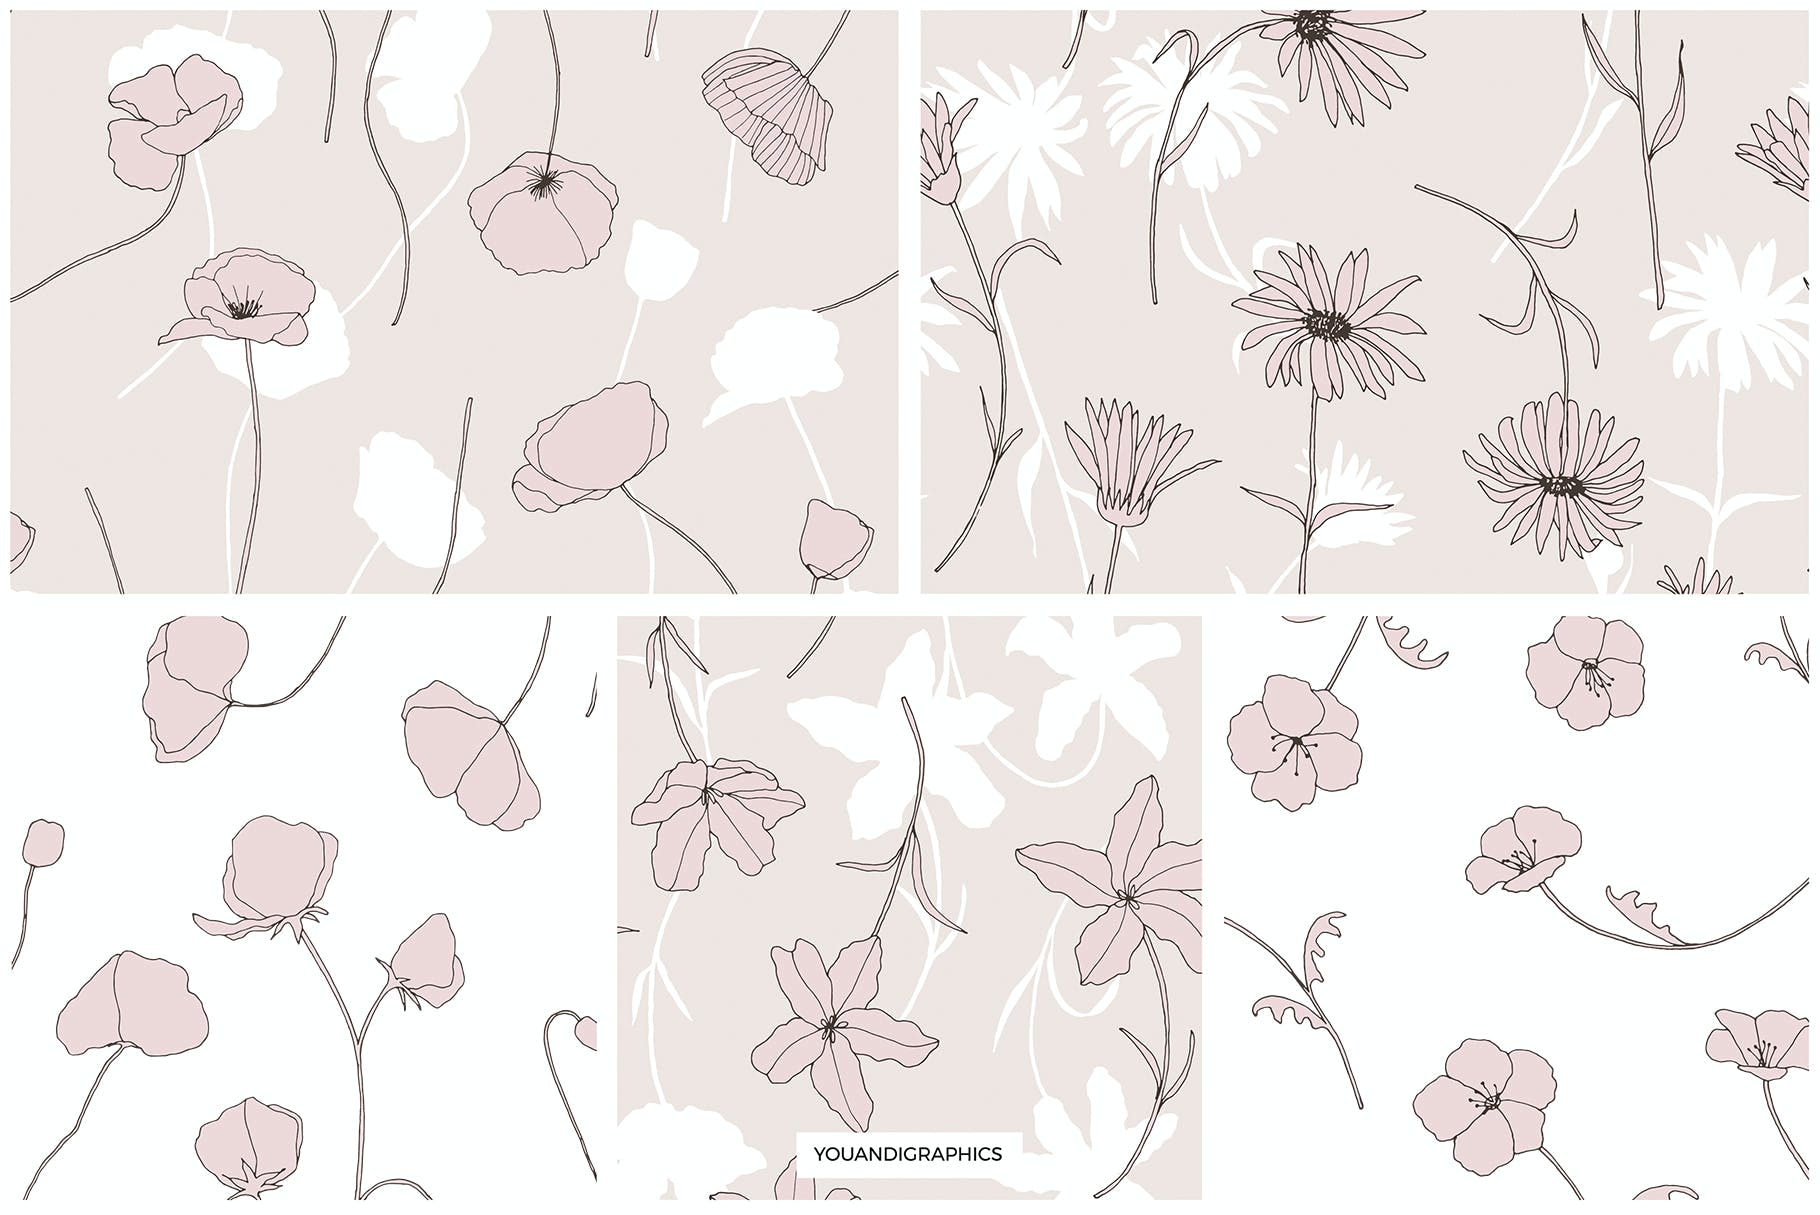 精美的花卉图案和元素 Dainty Floral Patterns & Elements 图片素材 第16张